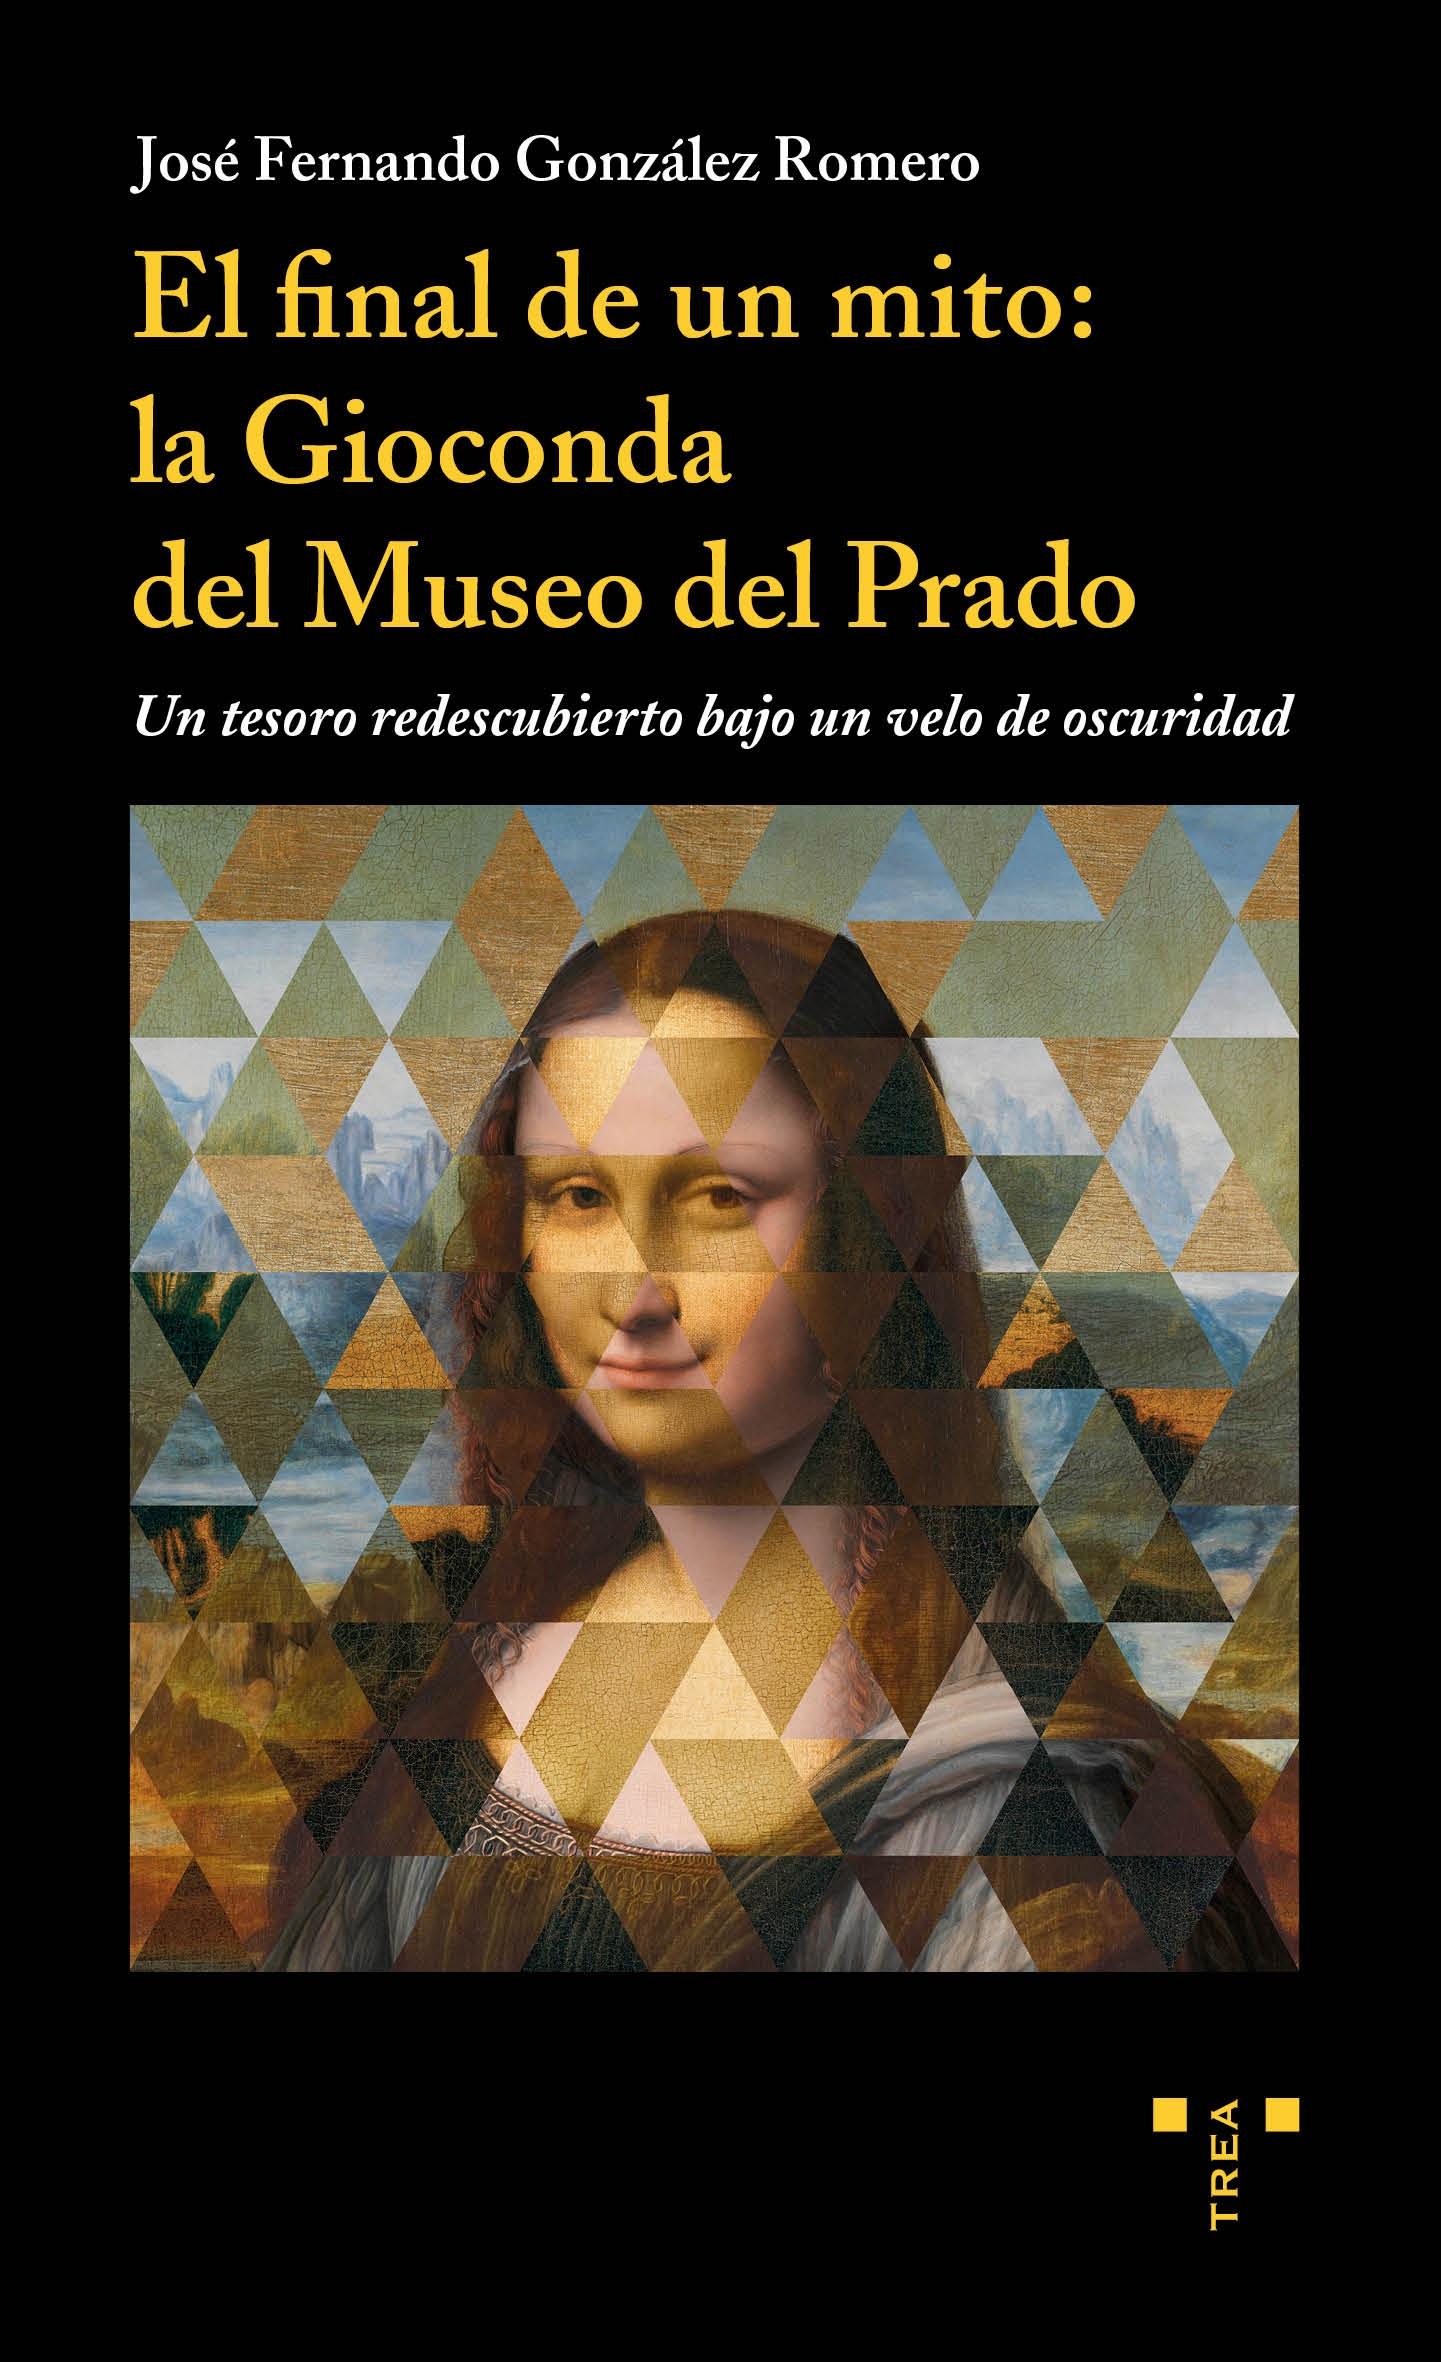 El final de un mito: la Gioconda del Museo del Prado "Un tesoro re descubierto bajo un velo de oscuridad". 